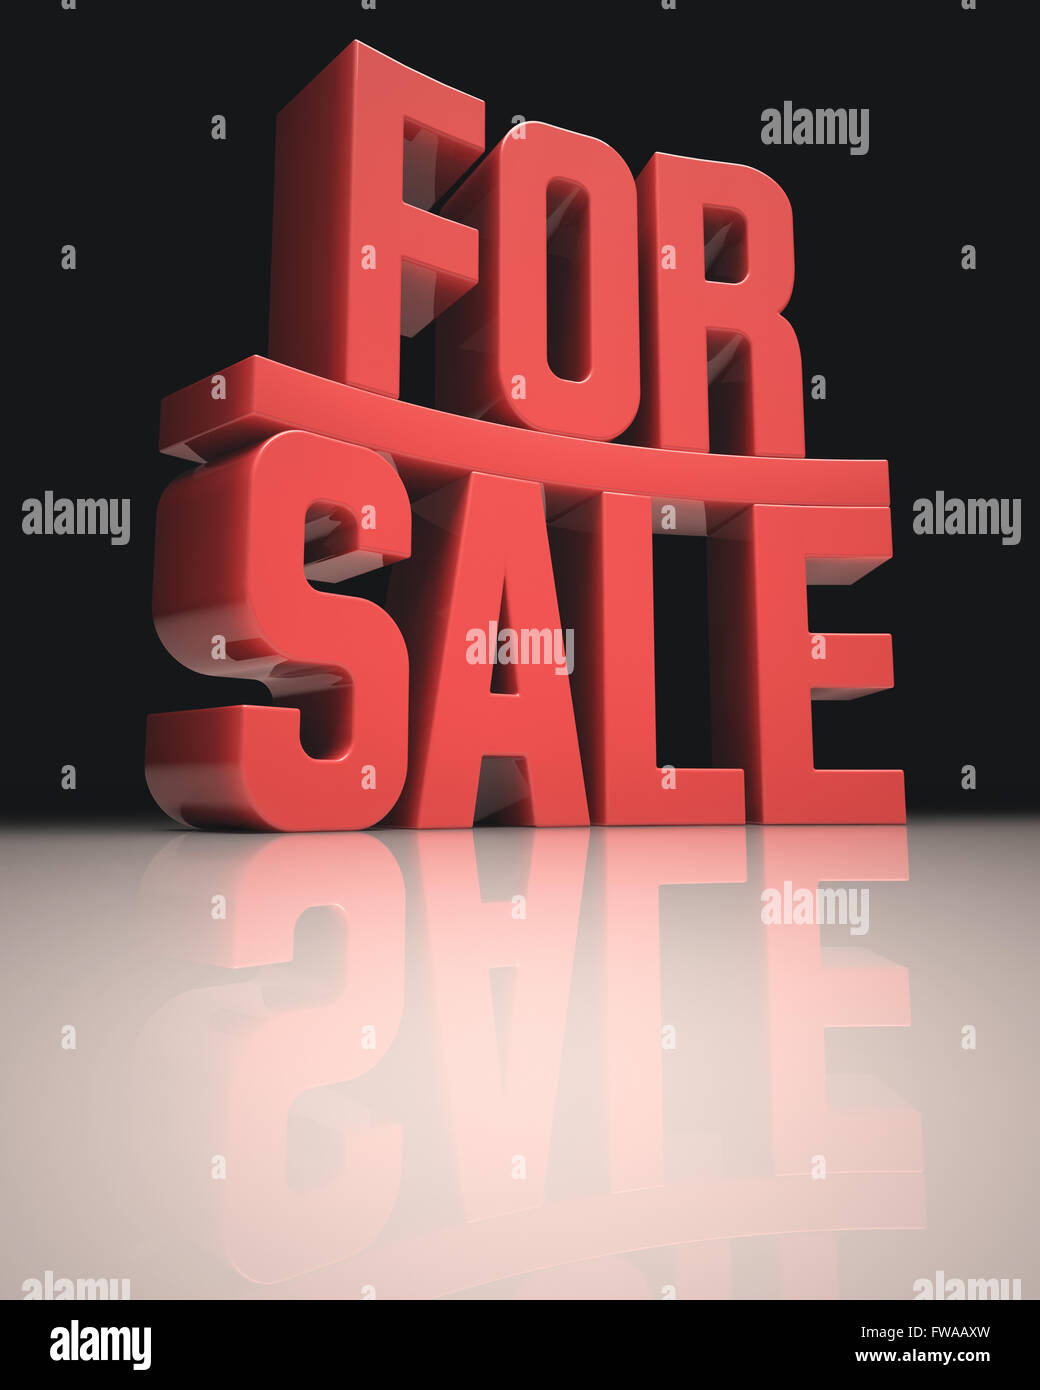 3D Bild-Konzept. "For Sale" Wörter in rot auf weißem Untergrund. Clipping-Pfad enthalten. Stockfoto